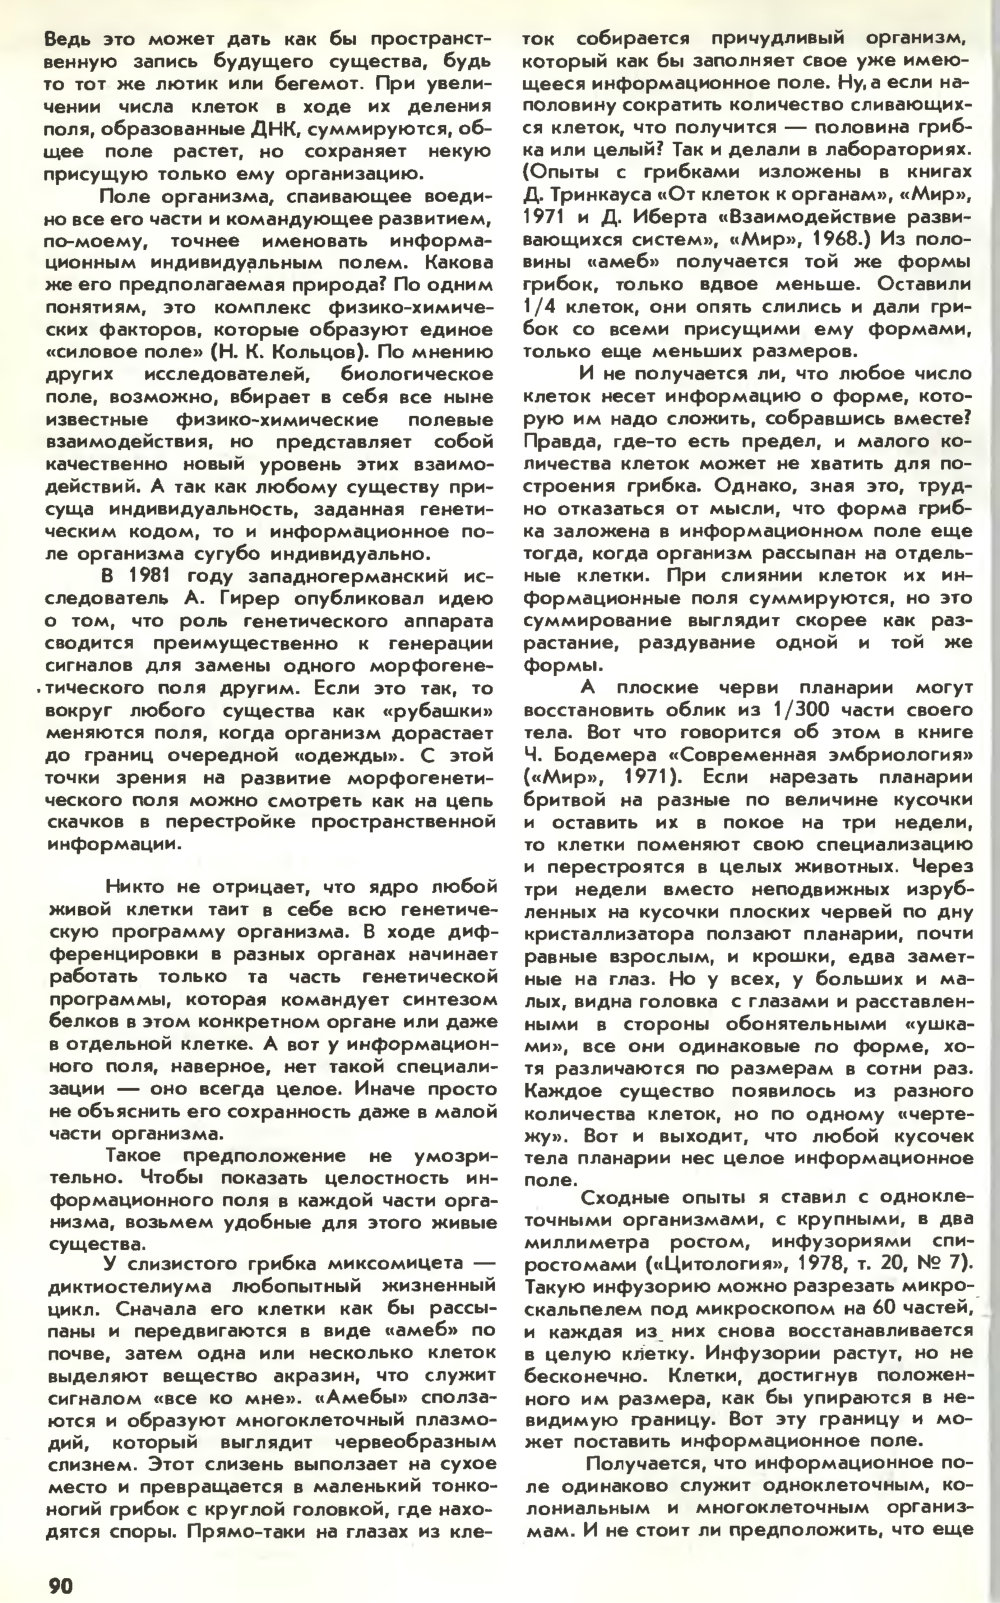 Информационное поле жизни. Ю. Симаков. Химия и жизнь, 1983, №3, с.88-92. Фотокопия №3